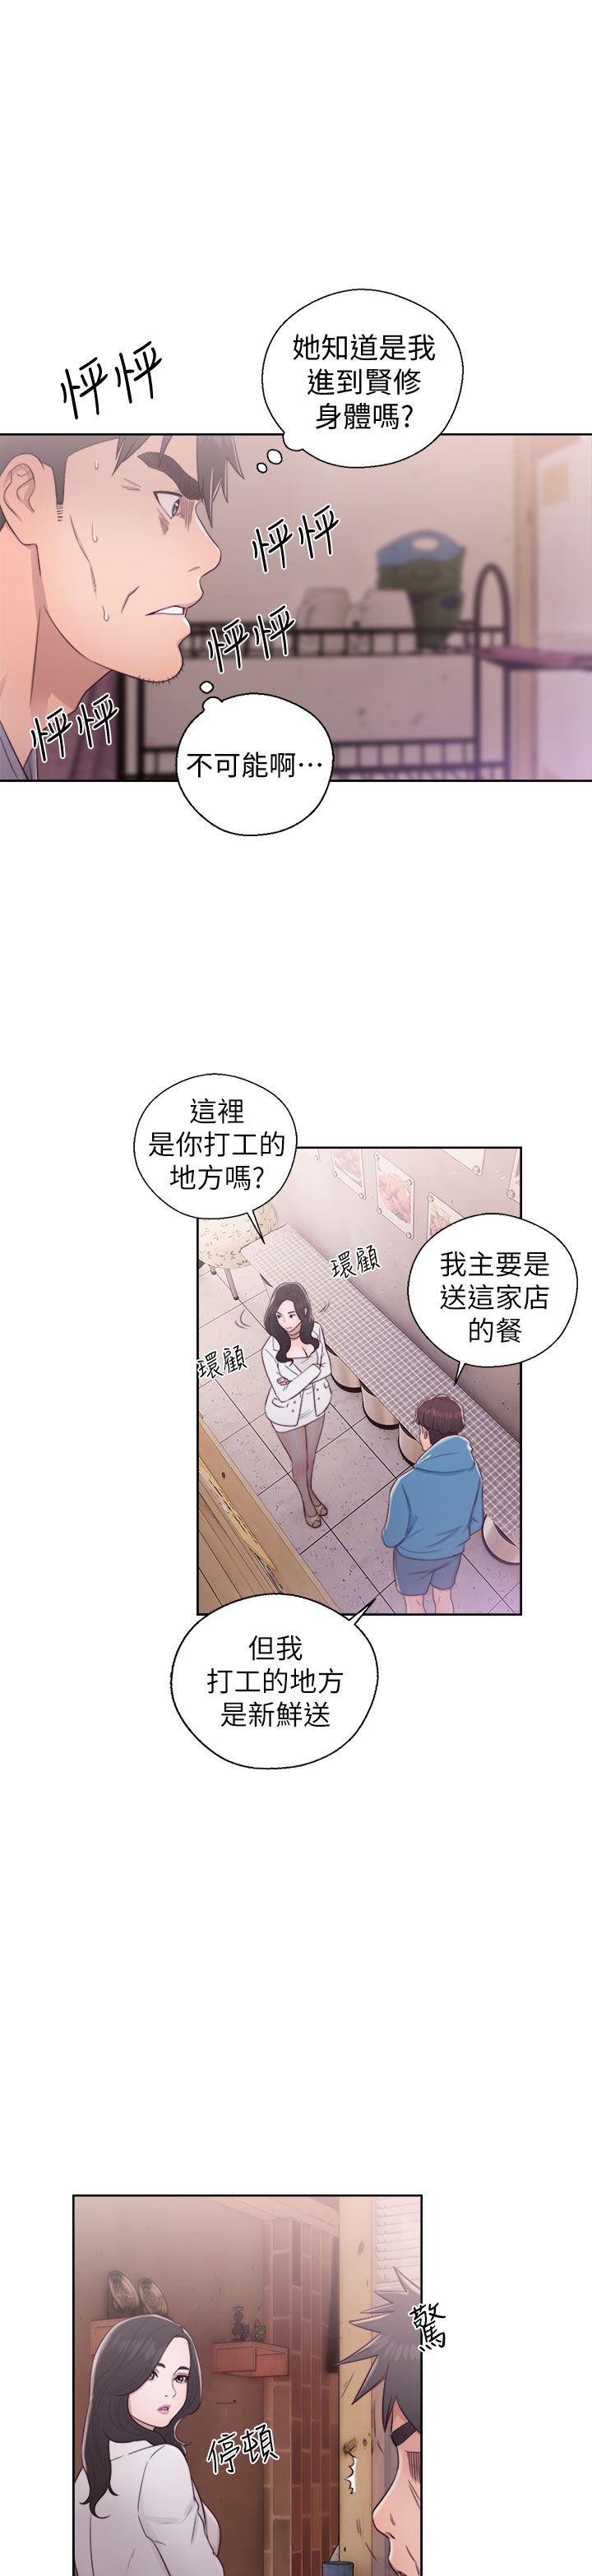 韩国污漫画 青春:逆齡小鮮肉 第19话 23